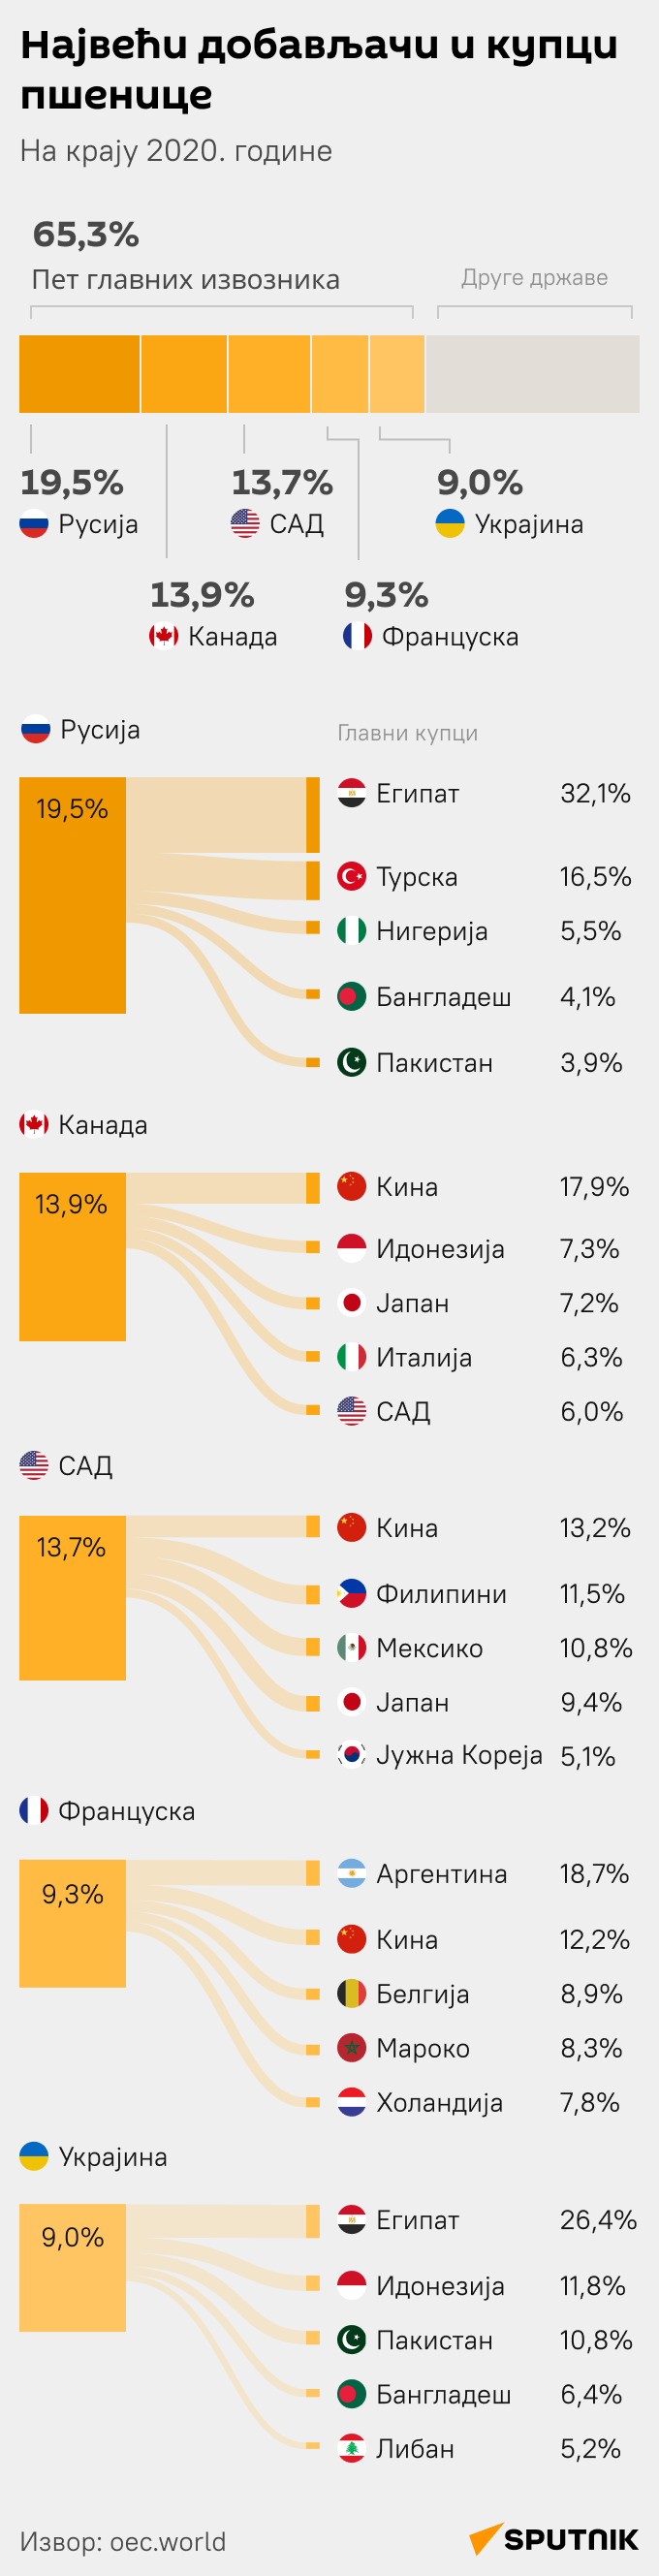 Највећи добављачи и купци пшенице - Инфографика  ћИРИЛИЦА моб - Sputnik Србија